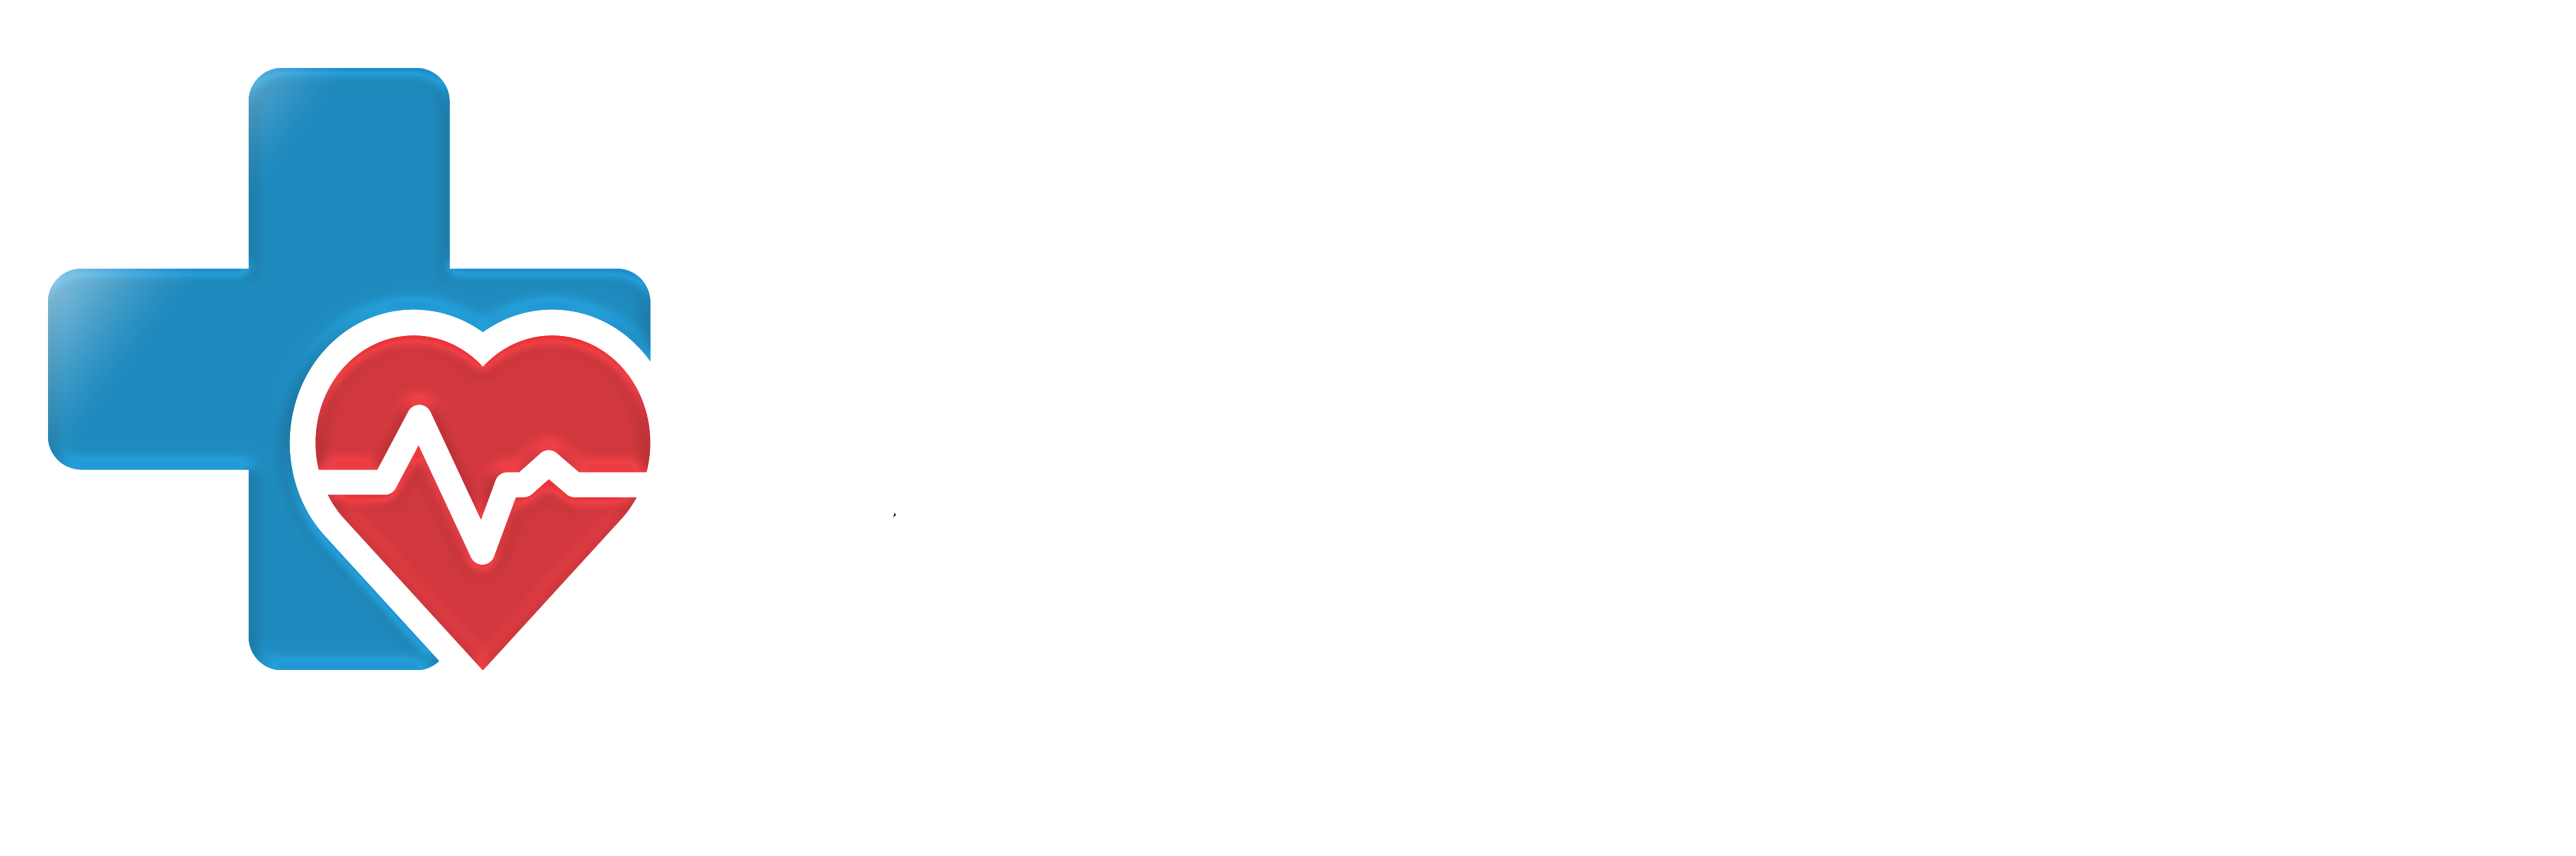 Евромед - Надежный поставщик медицинского оборудования